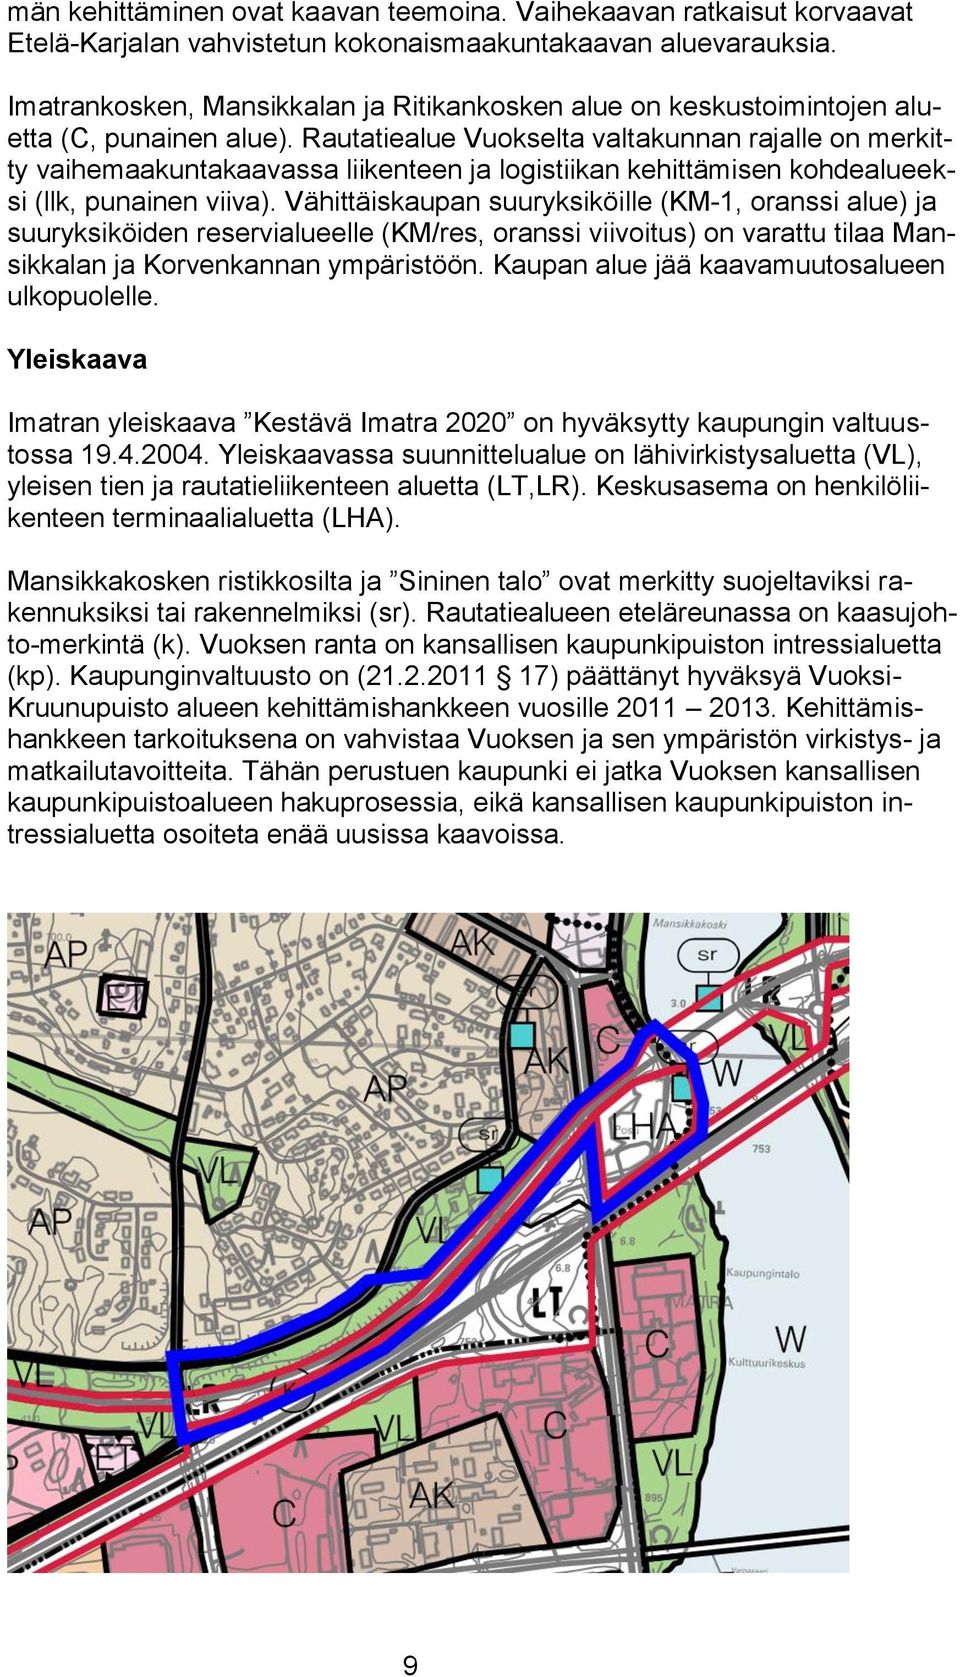 Rautatiealue Vuokselta valtakunnan rajalle on merkitty vaihemaakuntakaavassa liikenteen ja logistiikan kehittämisen kohdealueeksi (llk, punainen viiva).